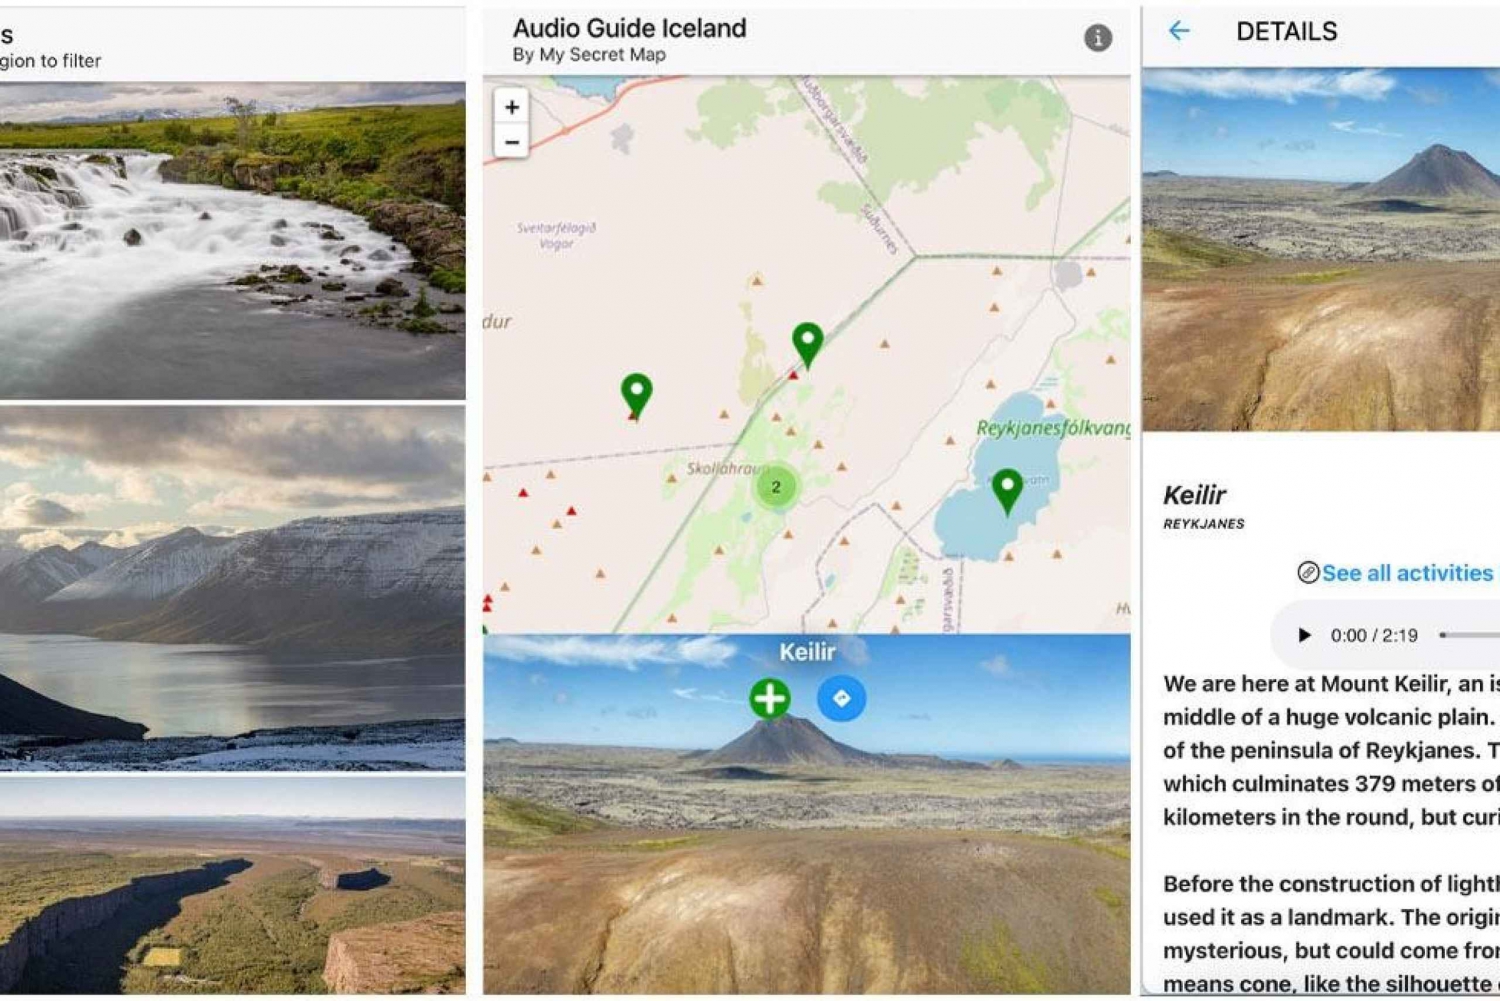 Islanda: Audioguida, Mappa interattiva 200 punti ++